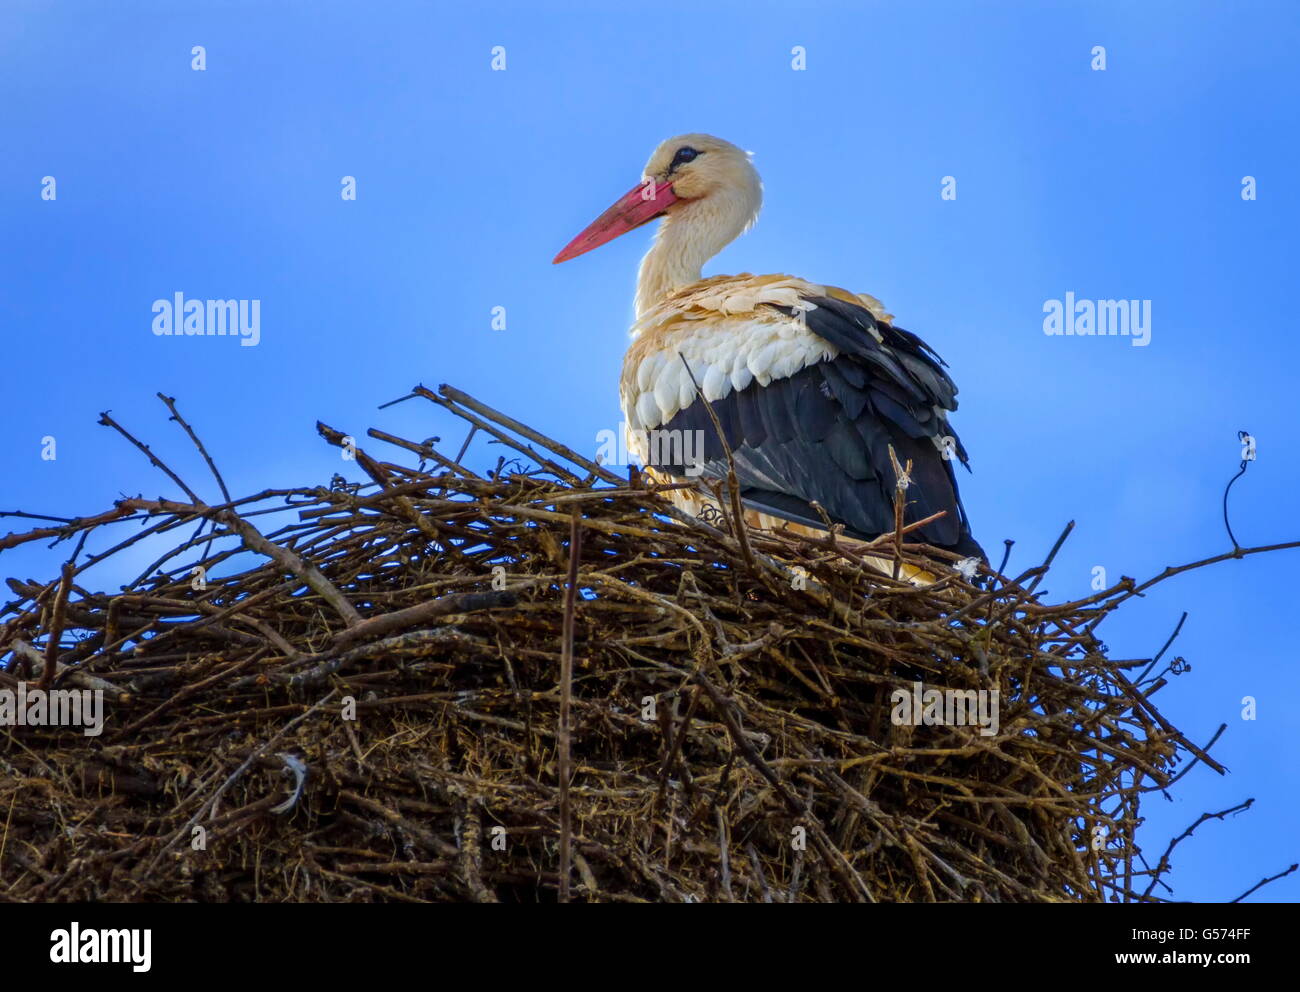 Unione cicogna bianca, ciconia, in piedi nel nido per giorno Foto Stock